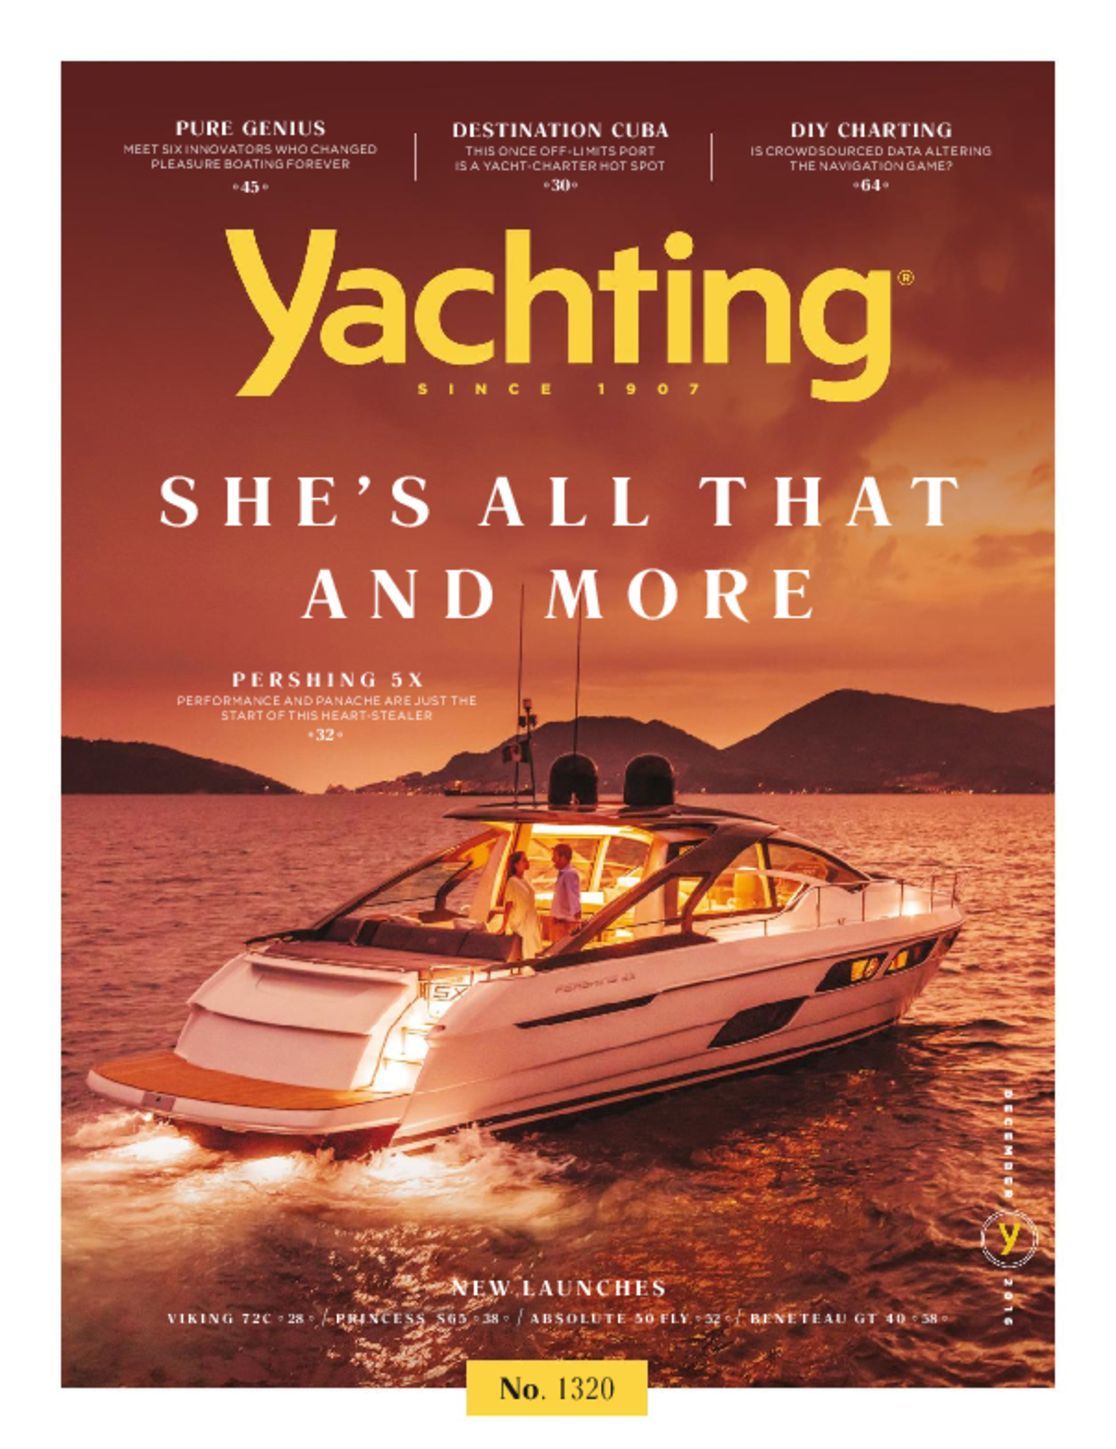 yachting magazine covers